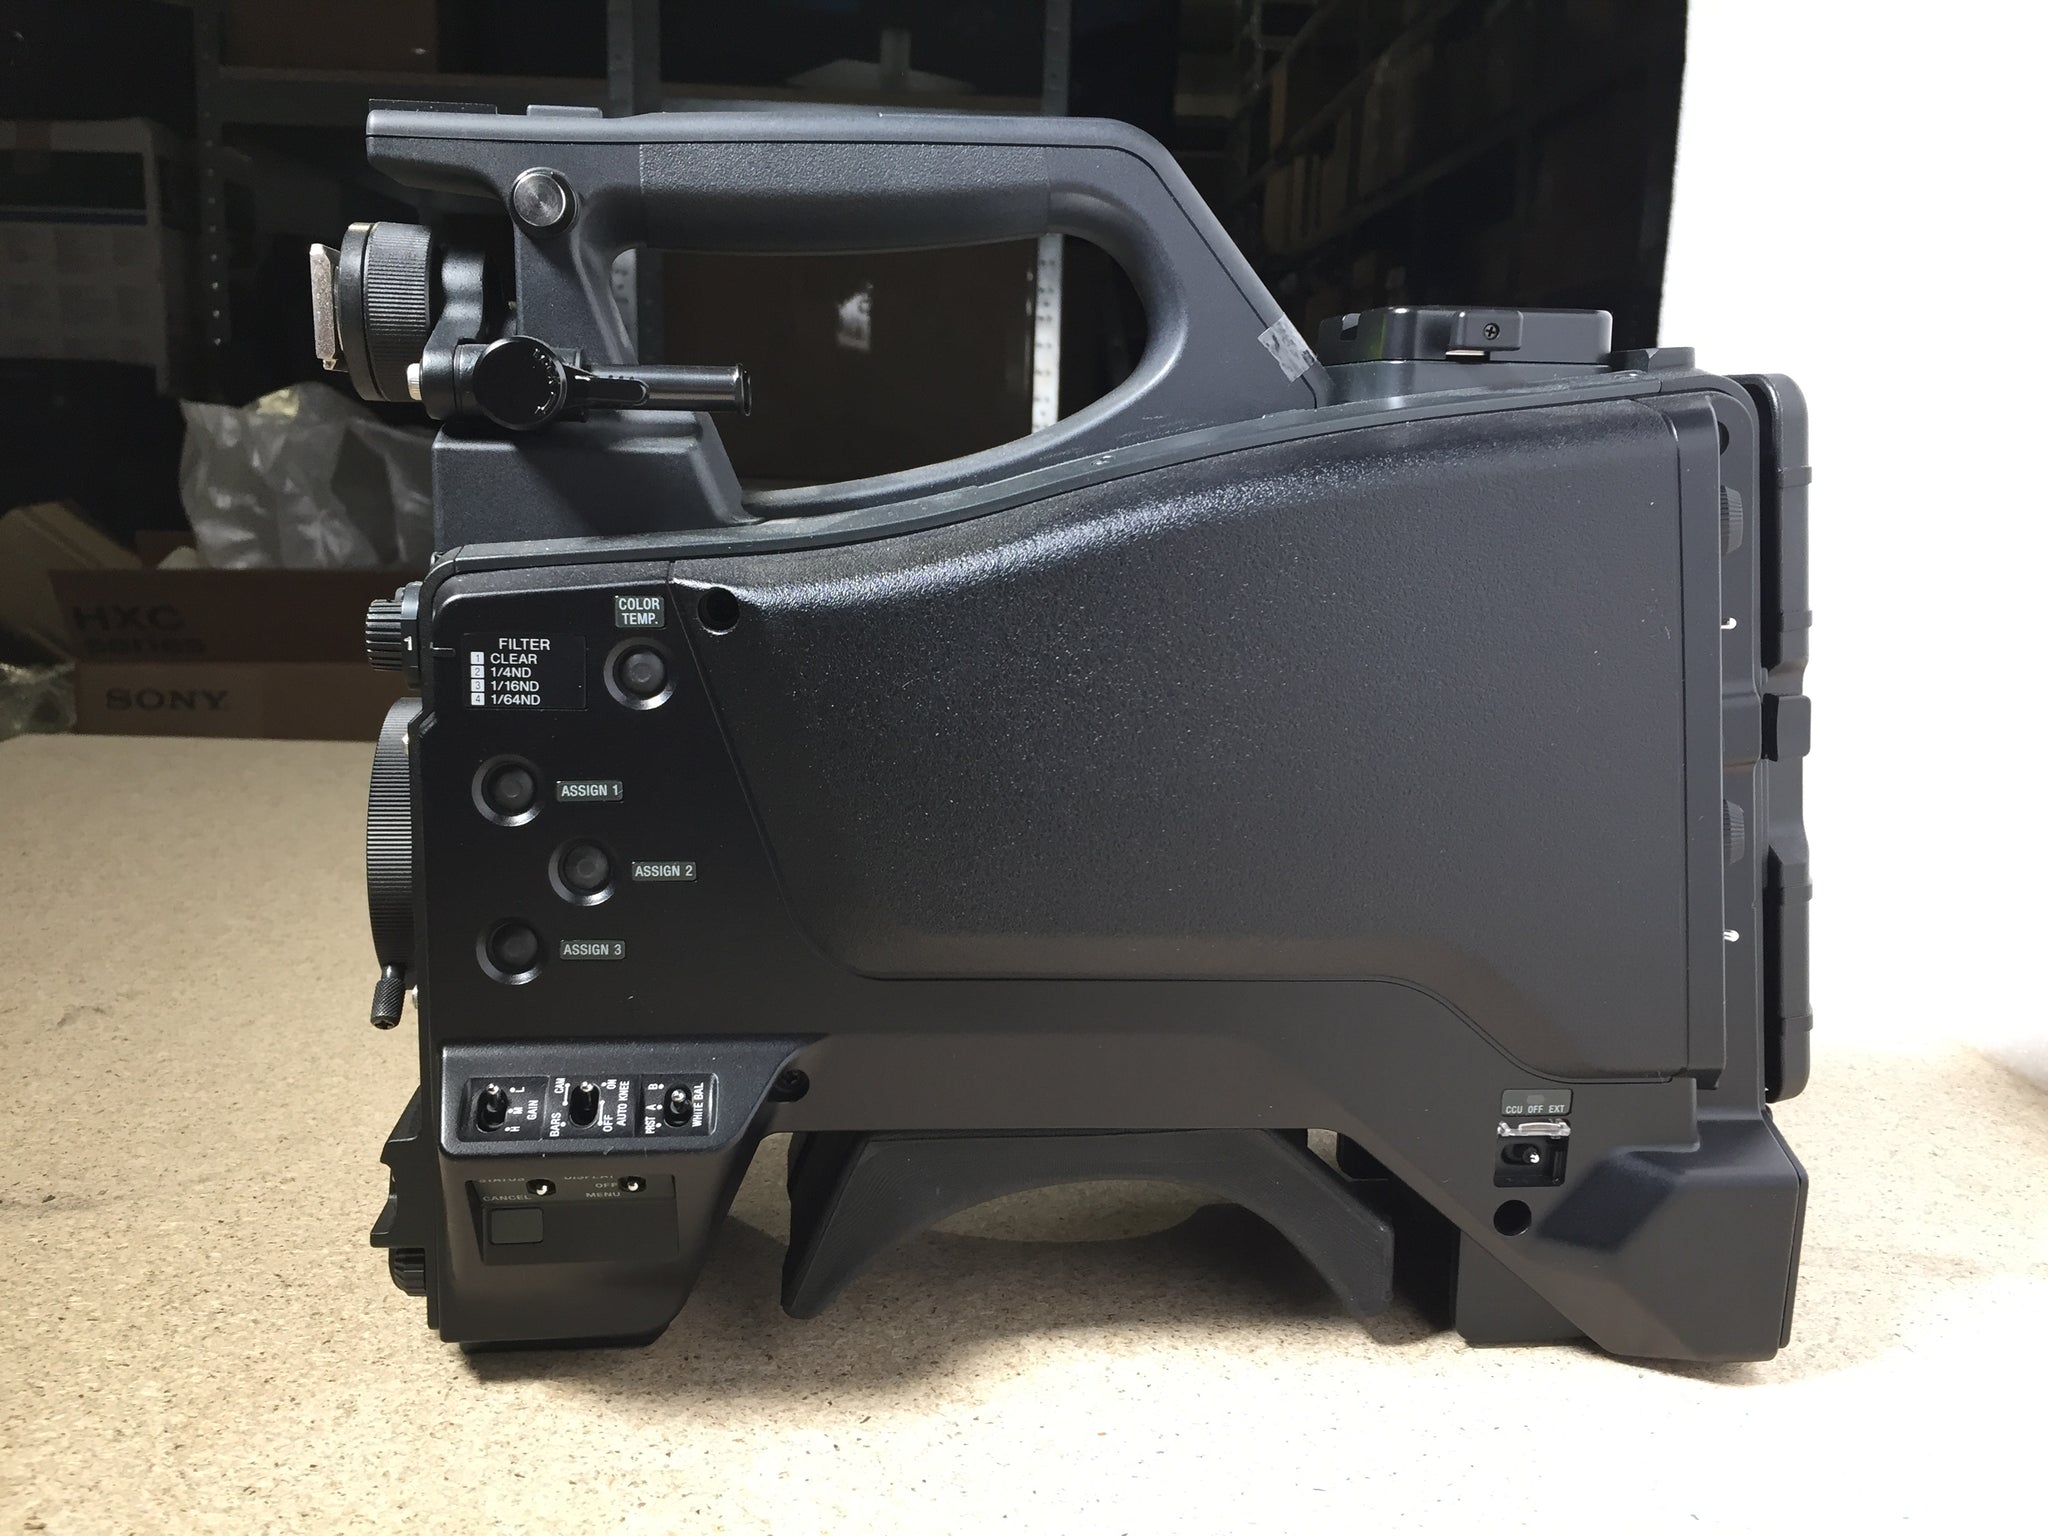 SONY HXC-FB80 3 cameras Set: HXC-FB80, HXCU-FB70, RCP-3100, RCP-750, HDVF-L750, VCT-14